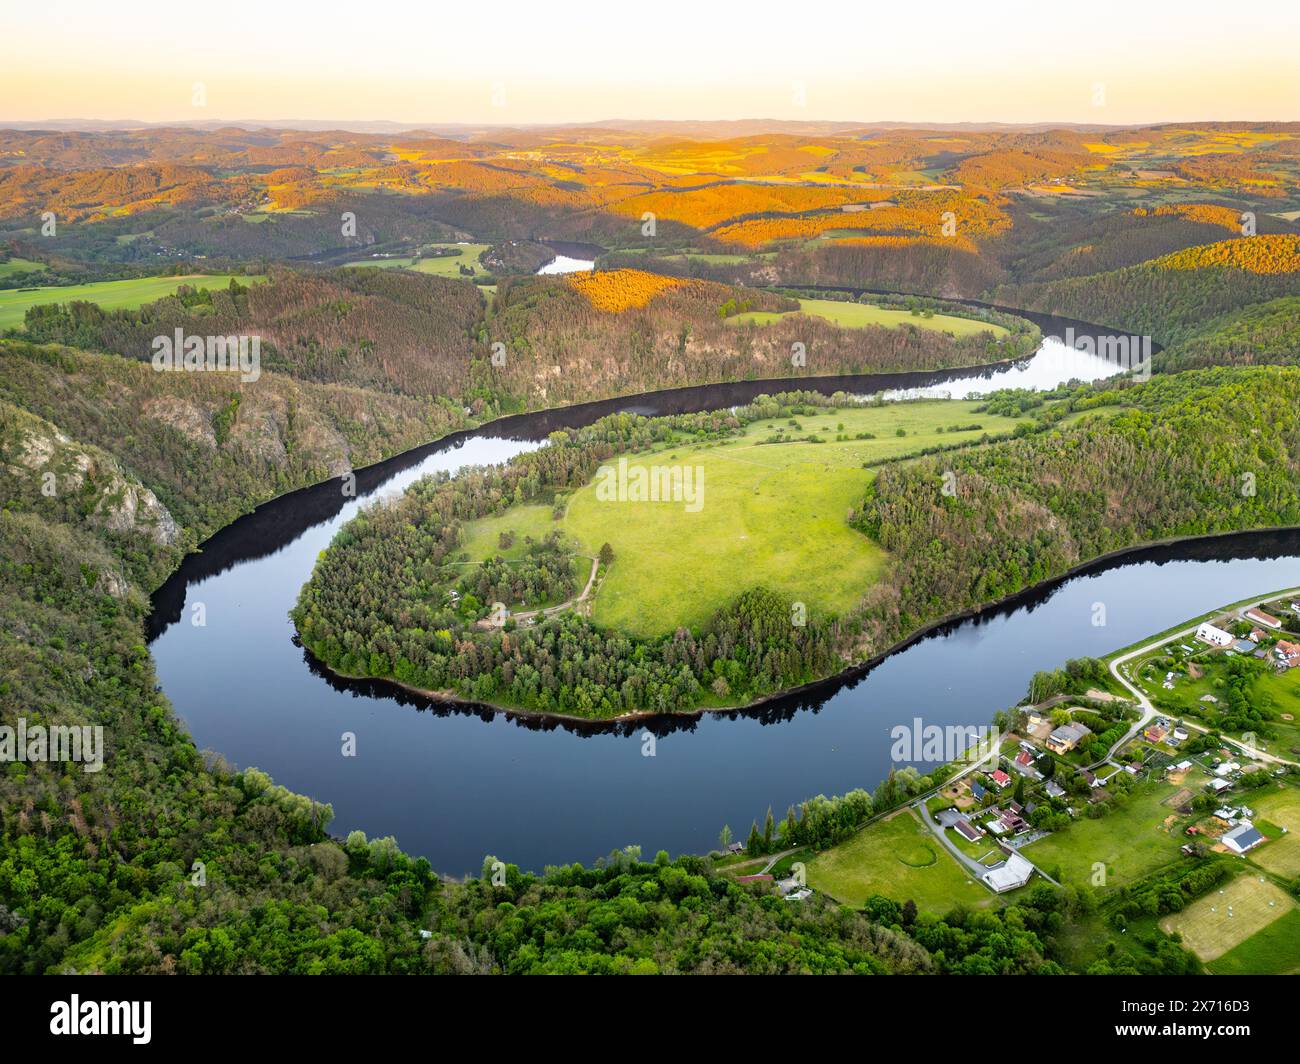 Blick aus der Vogelperspektive auf den Hufeisenbogen Solenice an der Moldau in Tschechien, mit Blick auf den sich windenden Fluss, umgeben von üppigem Grün und einem kleinen Dorf bei einem malerischen Sonnenuntergang. Stockfoto